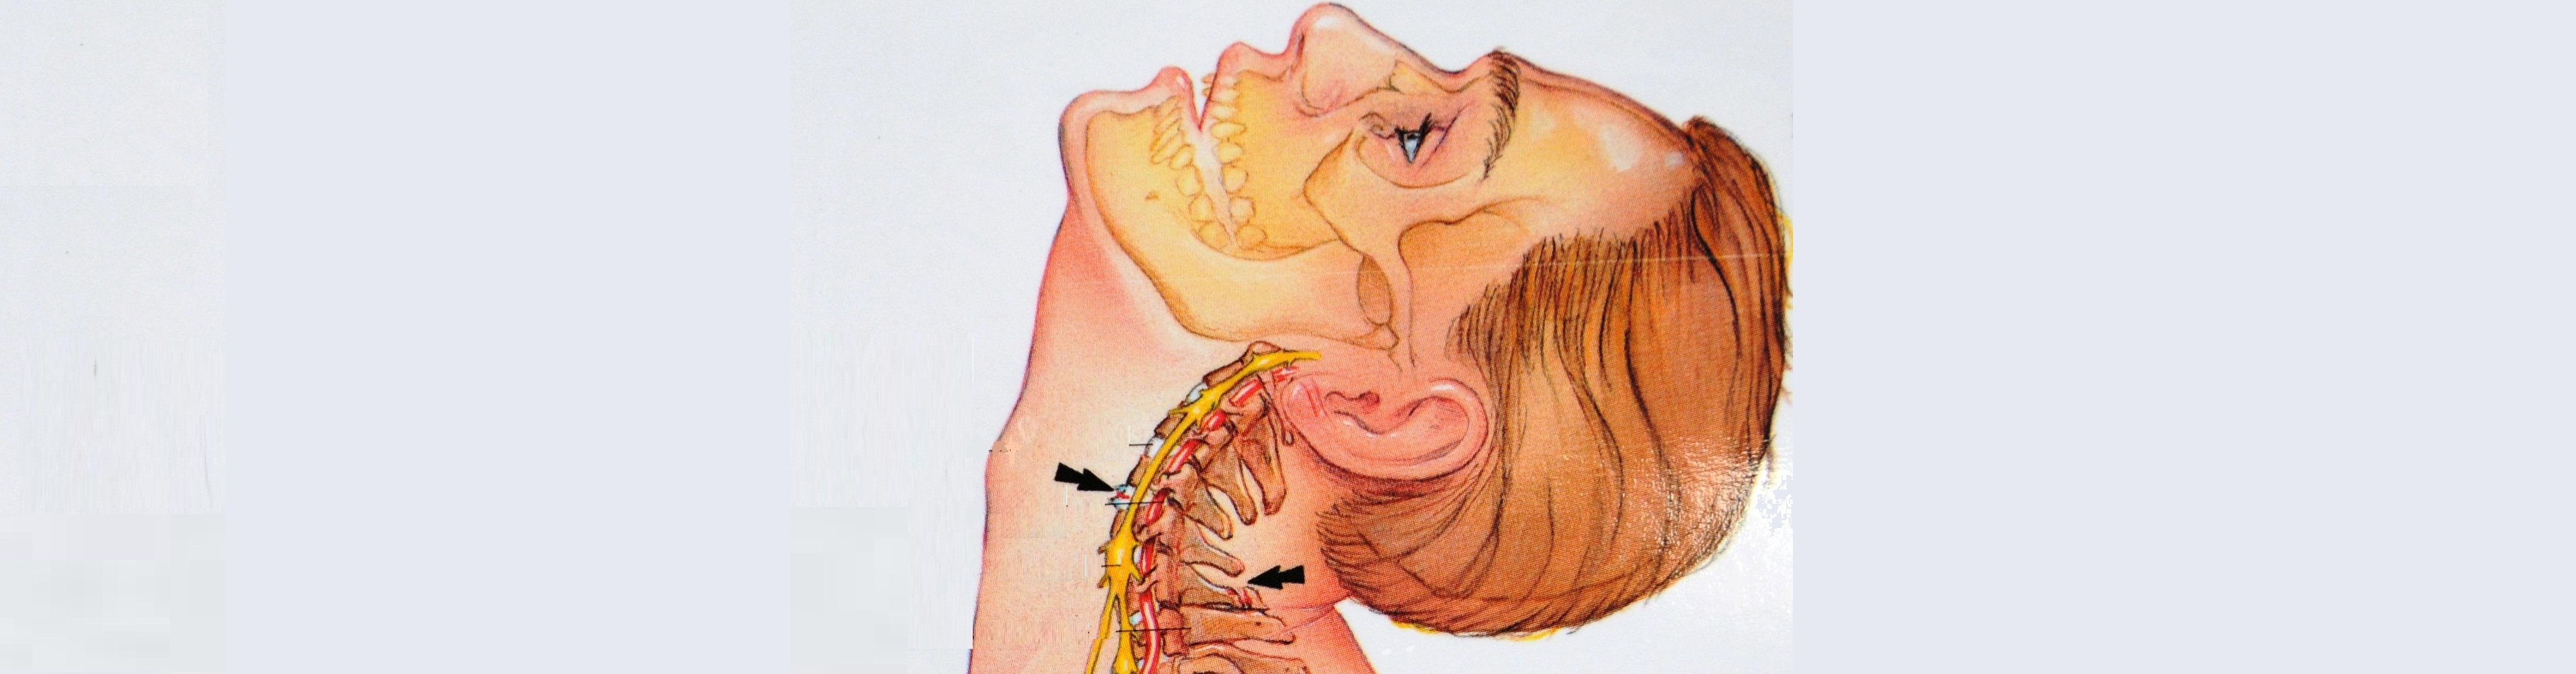 Лечение защемления нерва в грудном отделе позвоночника